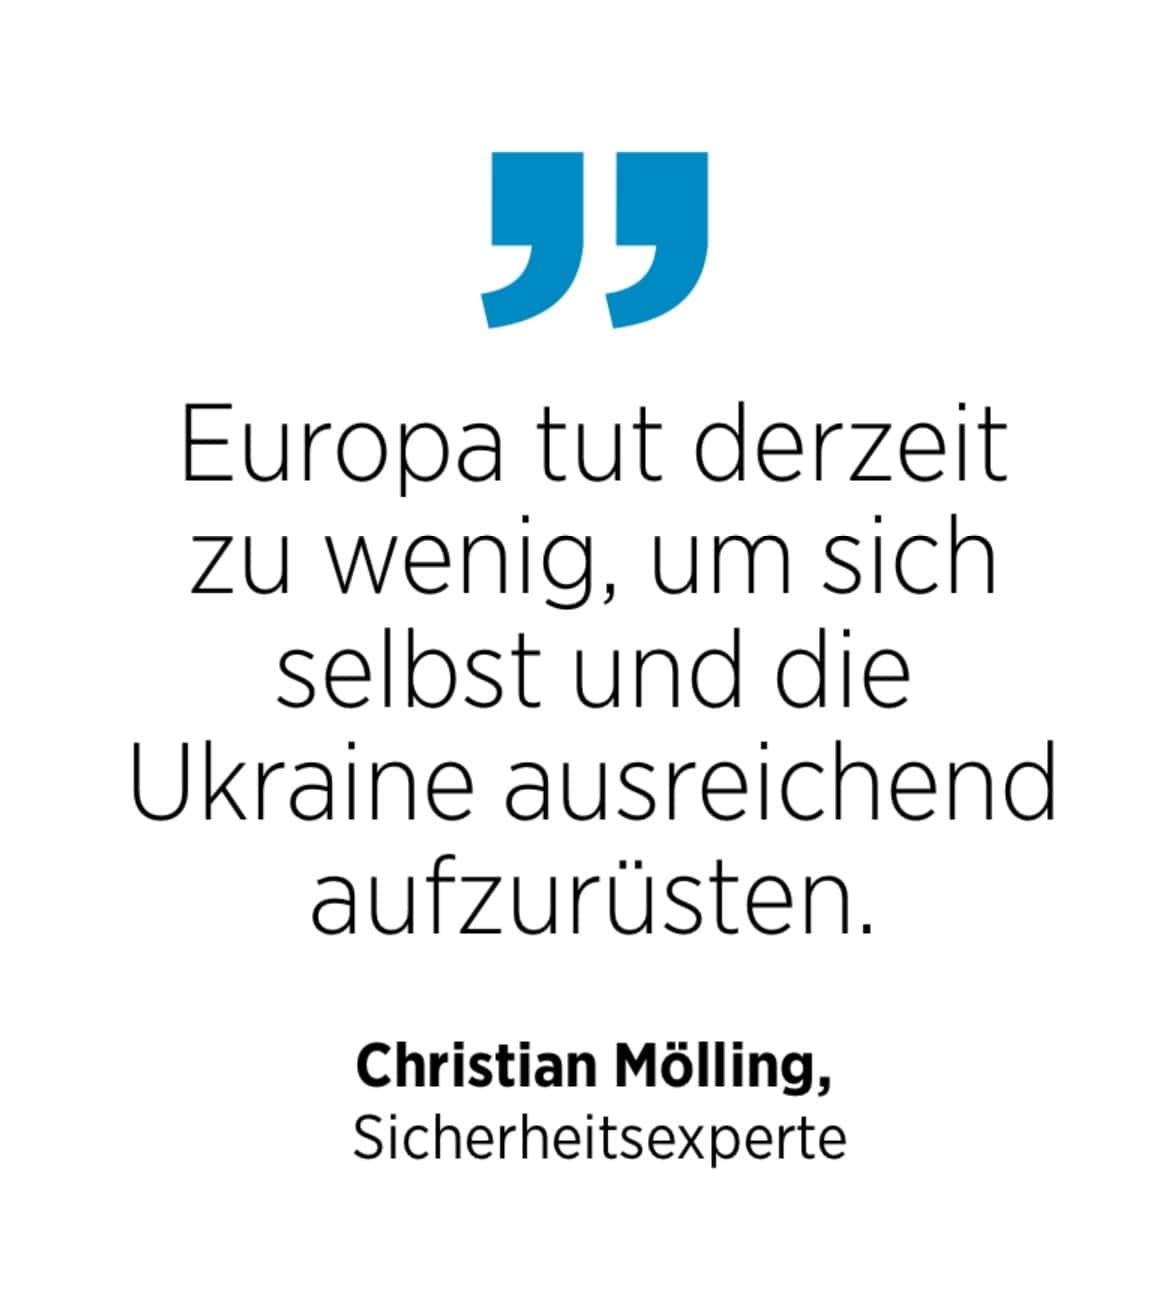 Christian Mölling, Sicherheitsexperte: Europa tut derzeit zu wenig, um sich selbst und die Ukraine ausreichend aufzurüsten.